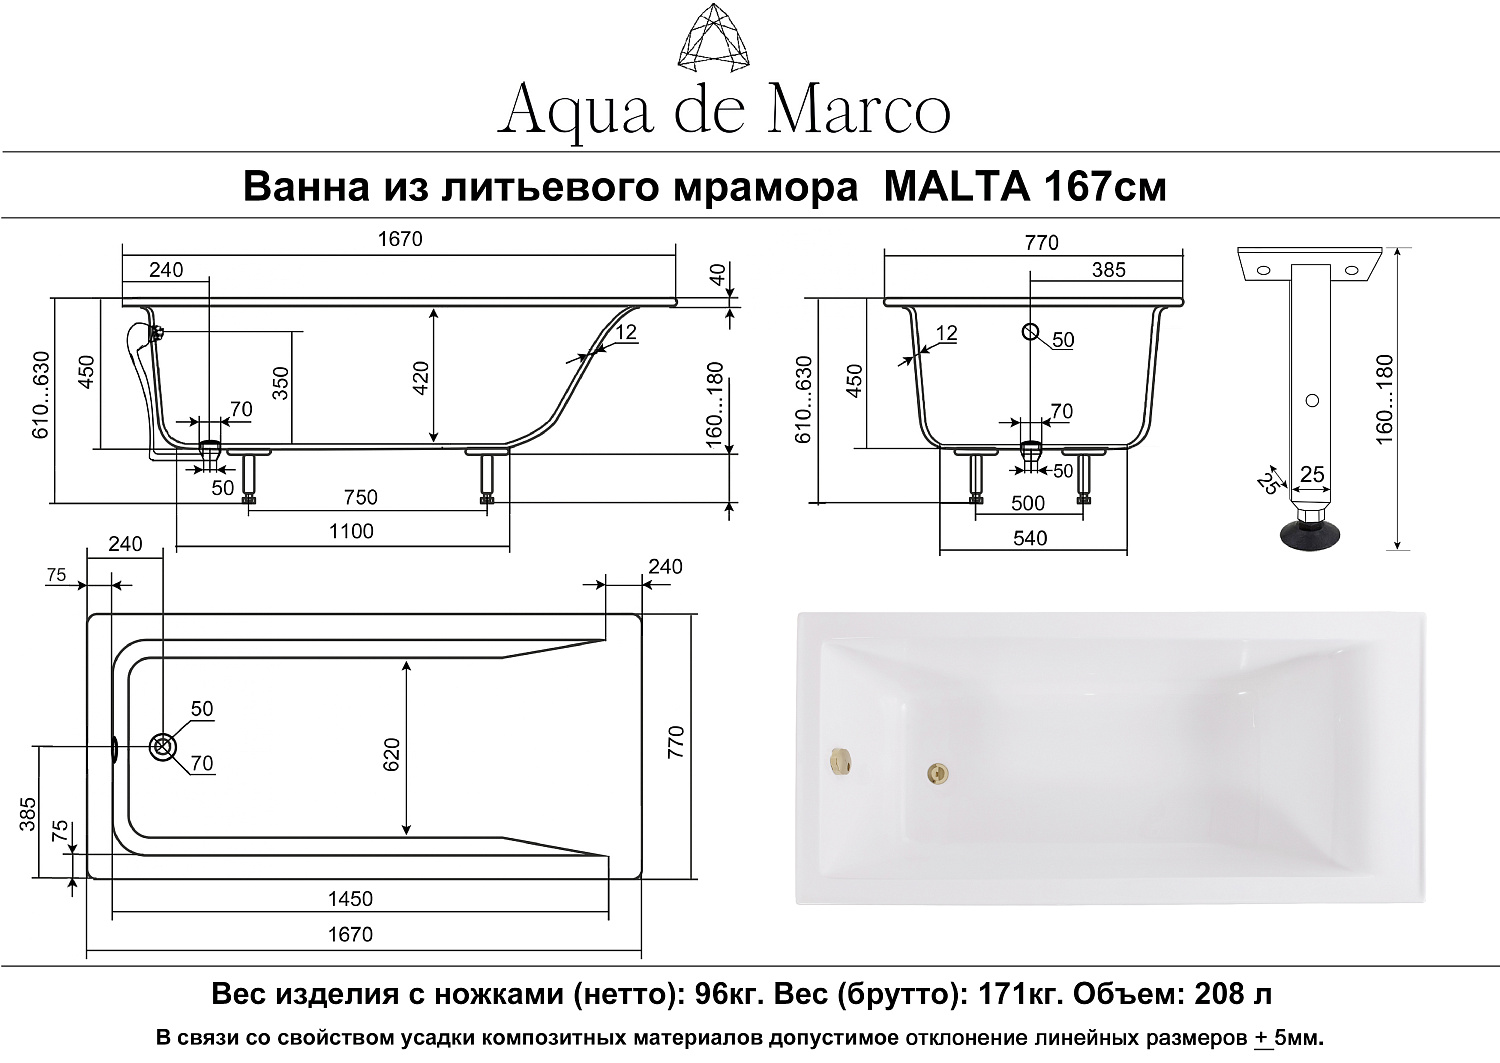 Ванна AQUA DE MARCO Malta ванна /Каменная/белая/металлические ножки (167см*77см*63см) (1170WMAL/1)